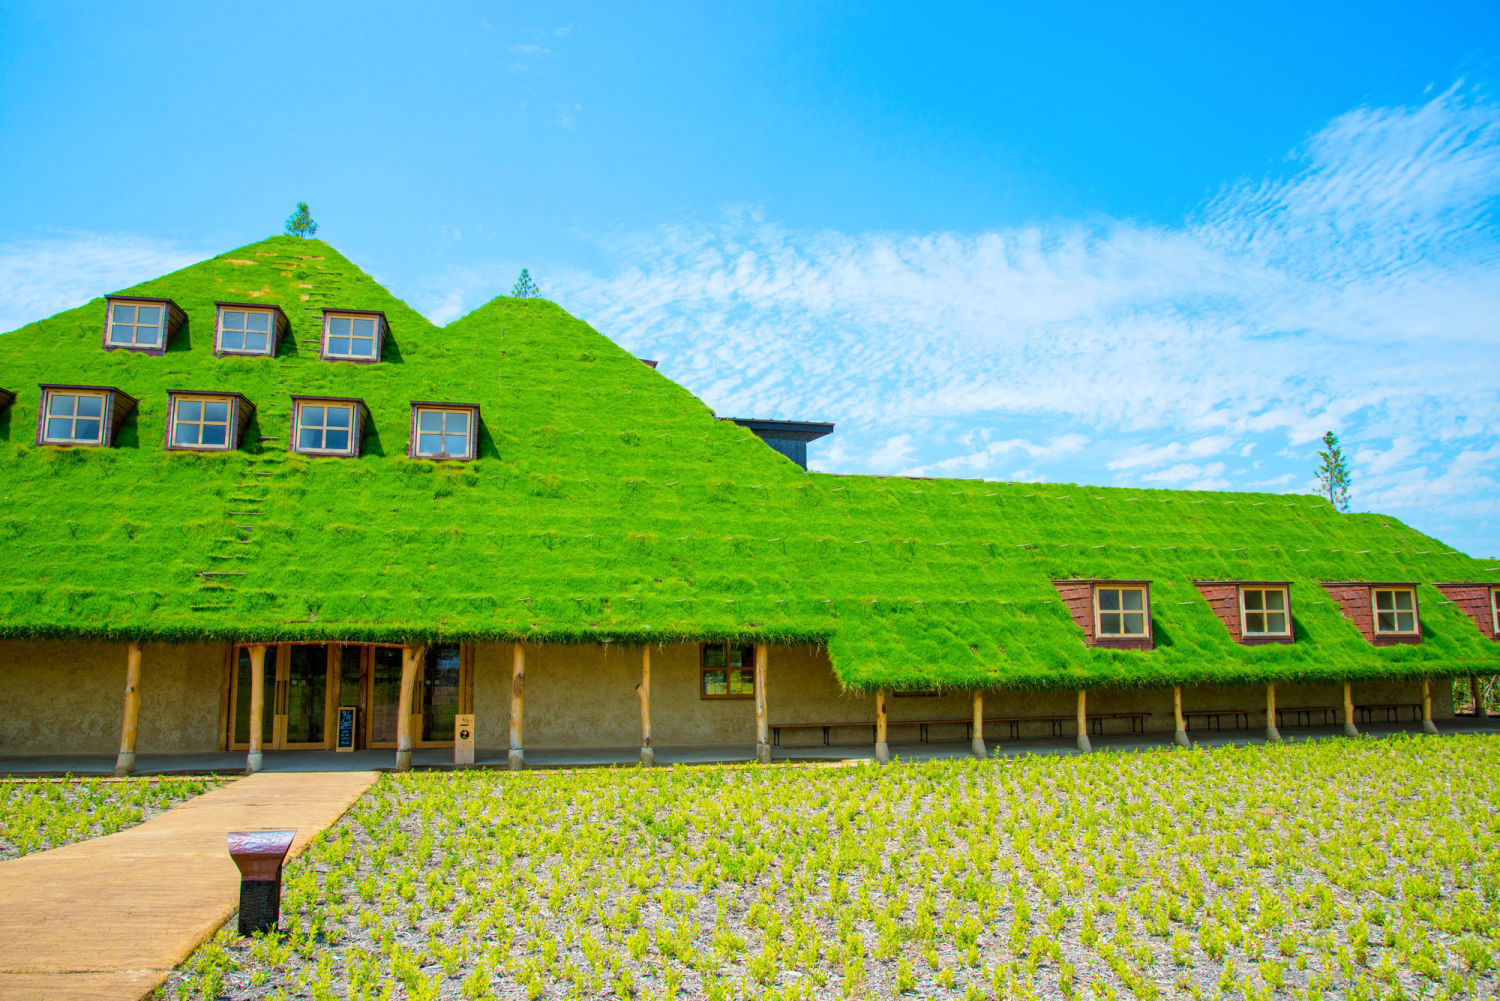 ここはおとぎの国 ジブリの世界 芝生屋根のかわいい おかしハウス を発見 Jptrp Com